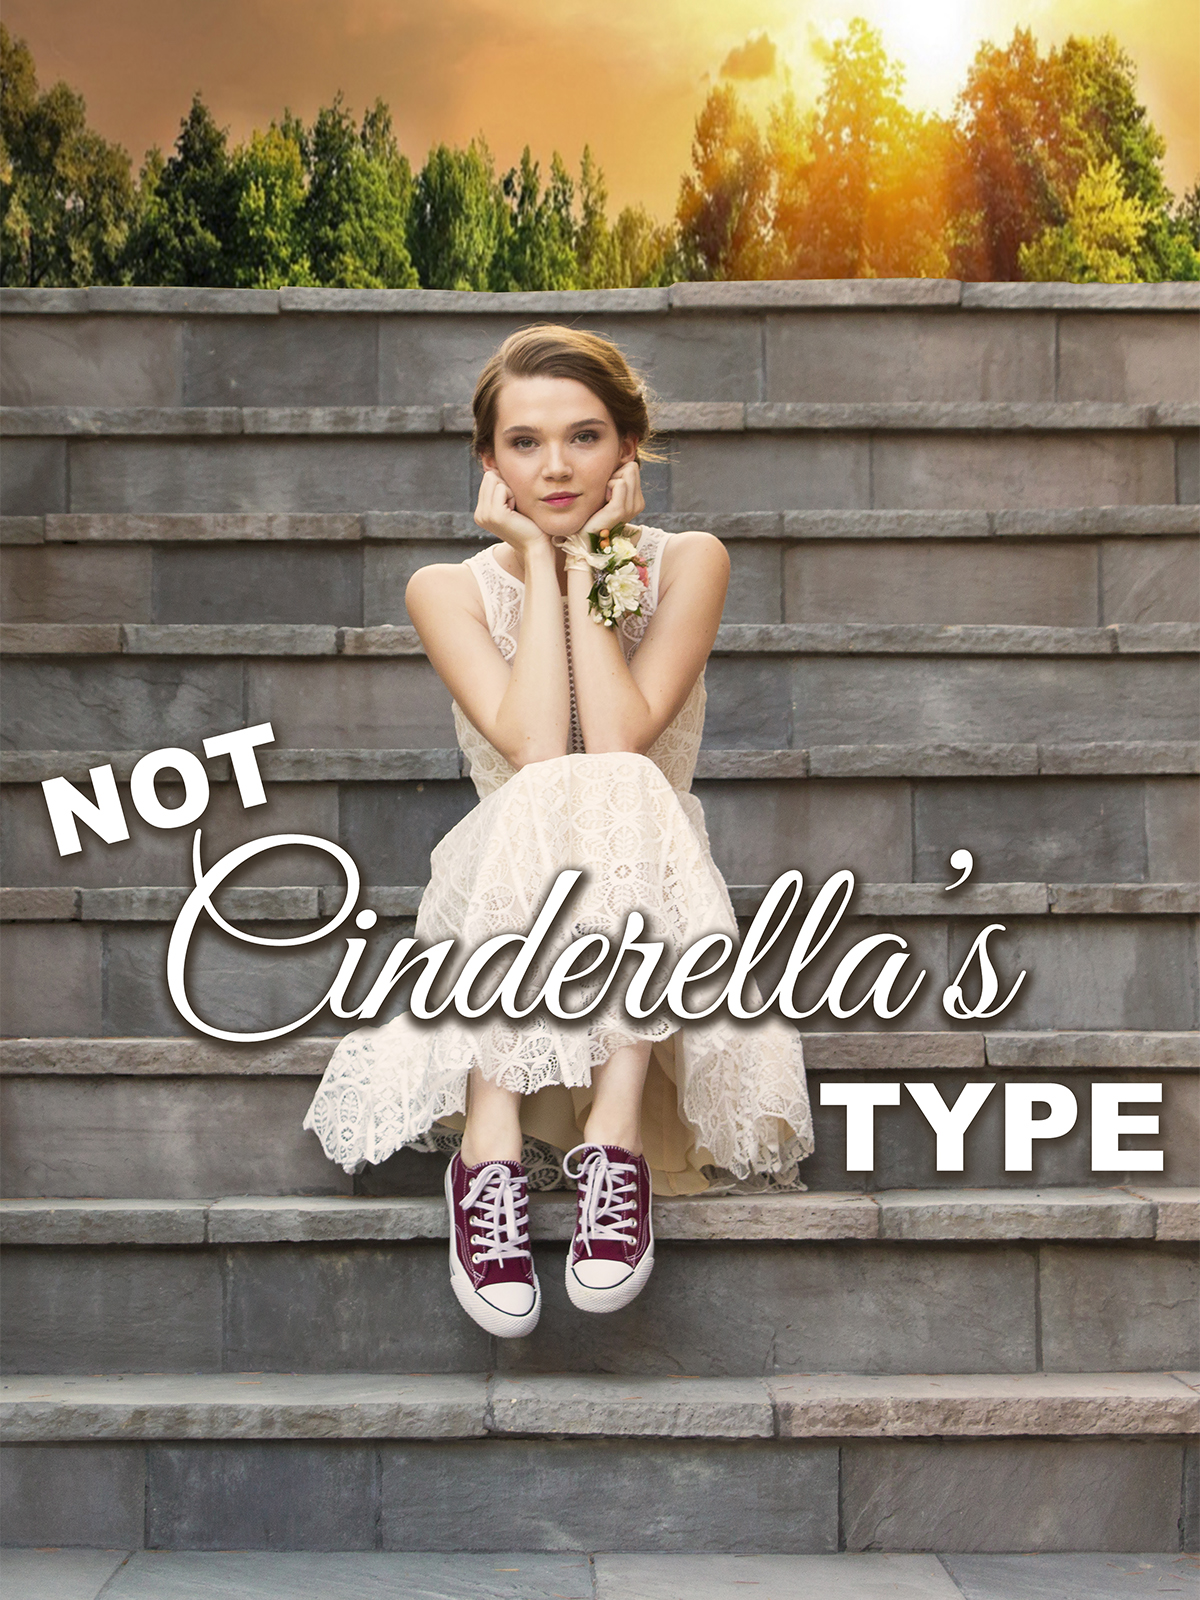  فیلم سینمایی Not Cinderella's Type به کارگردانی Brian Brough